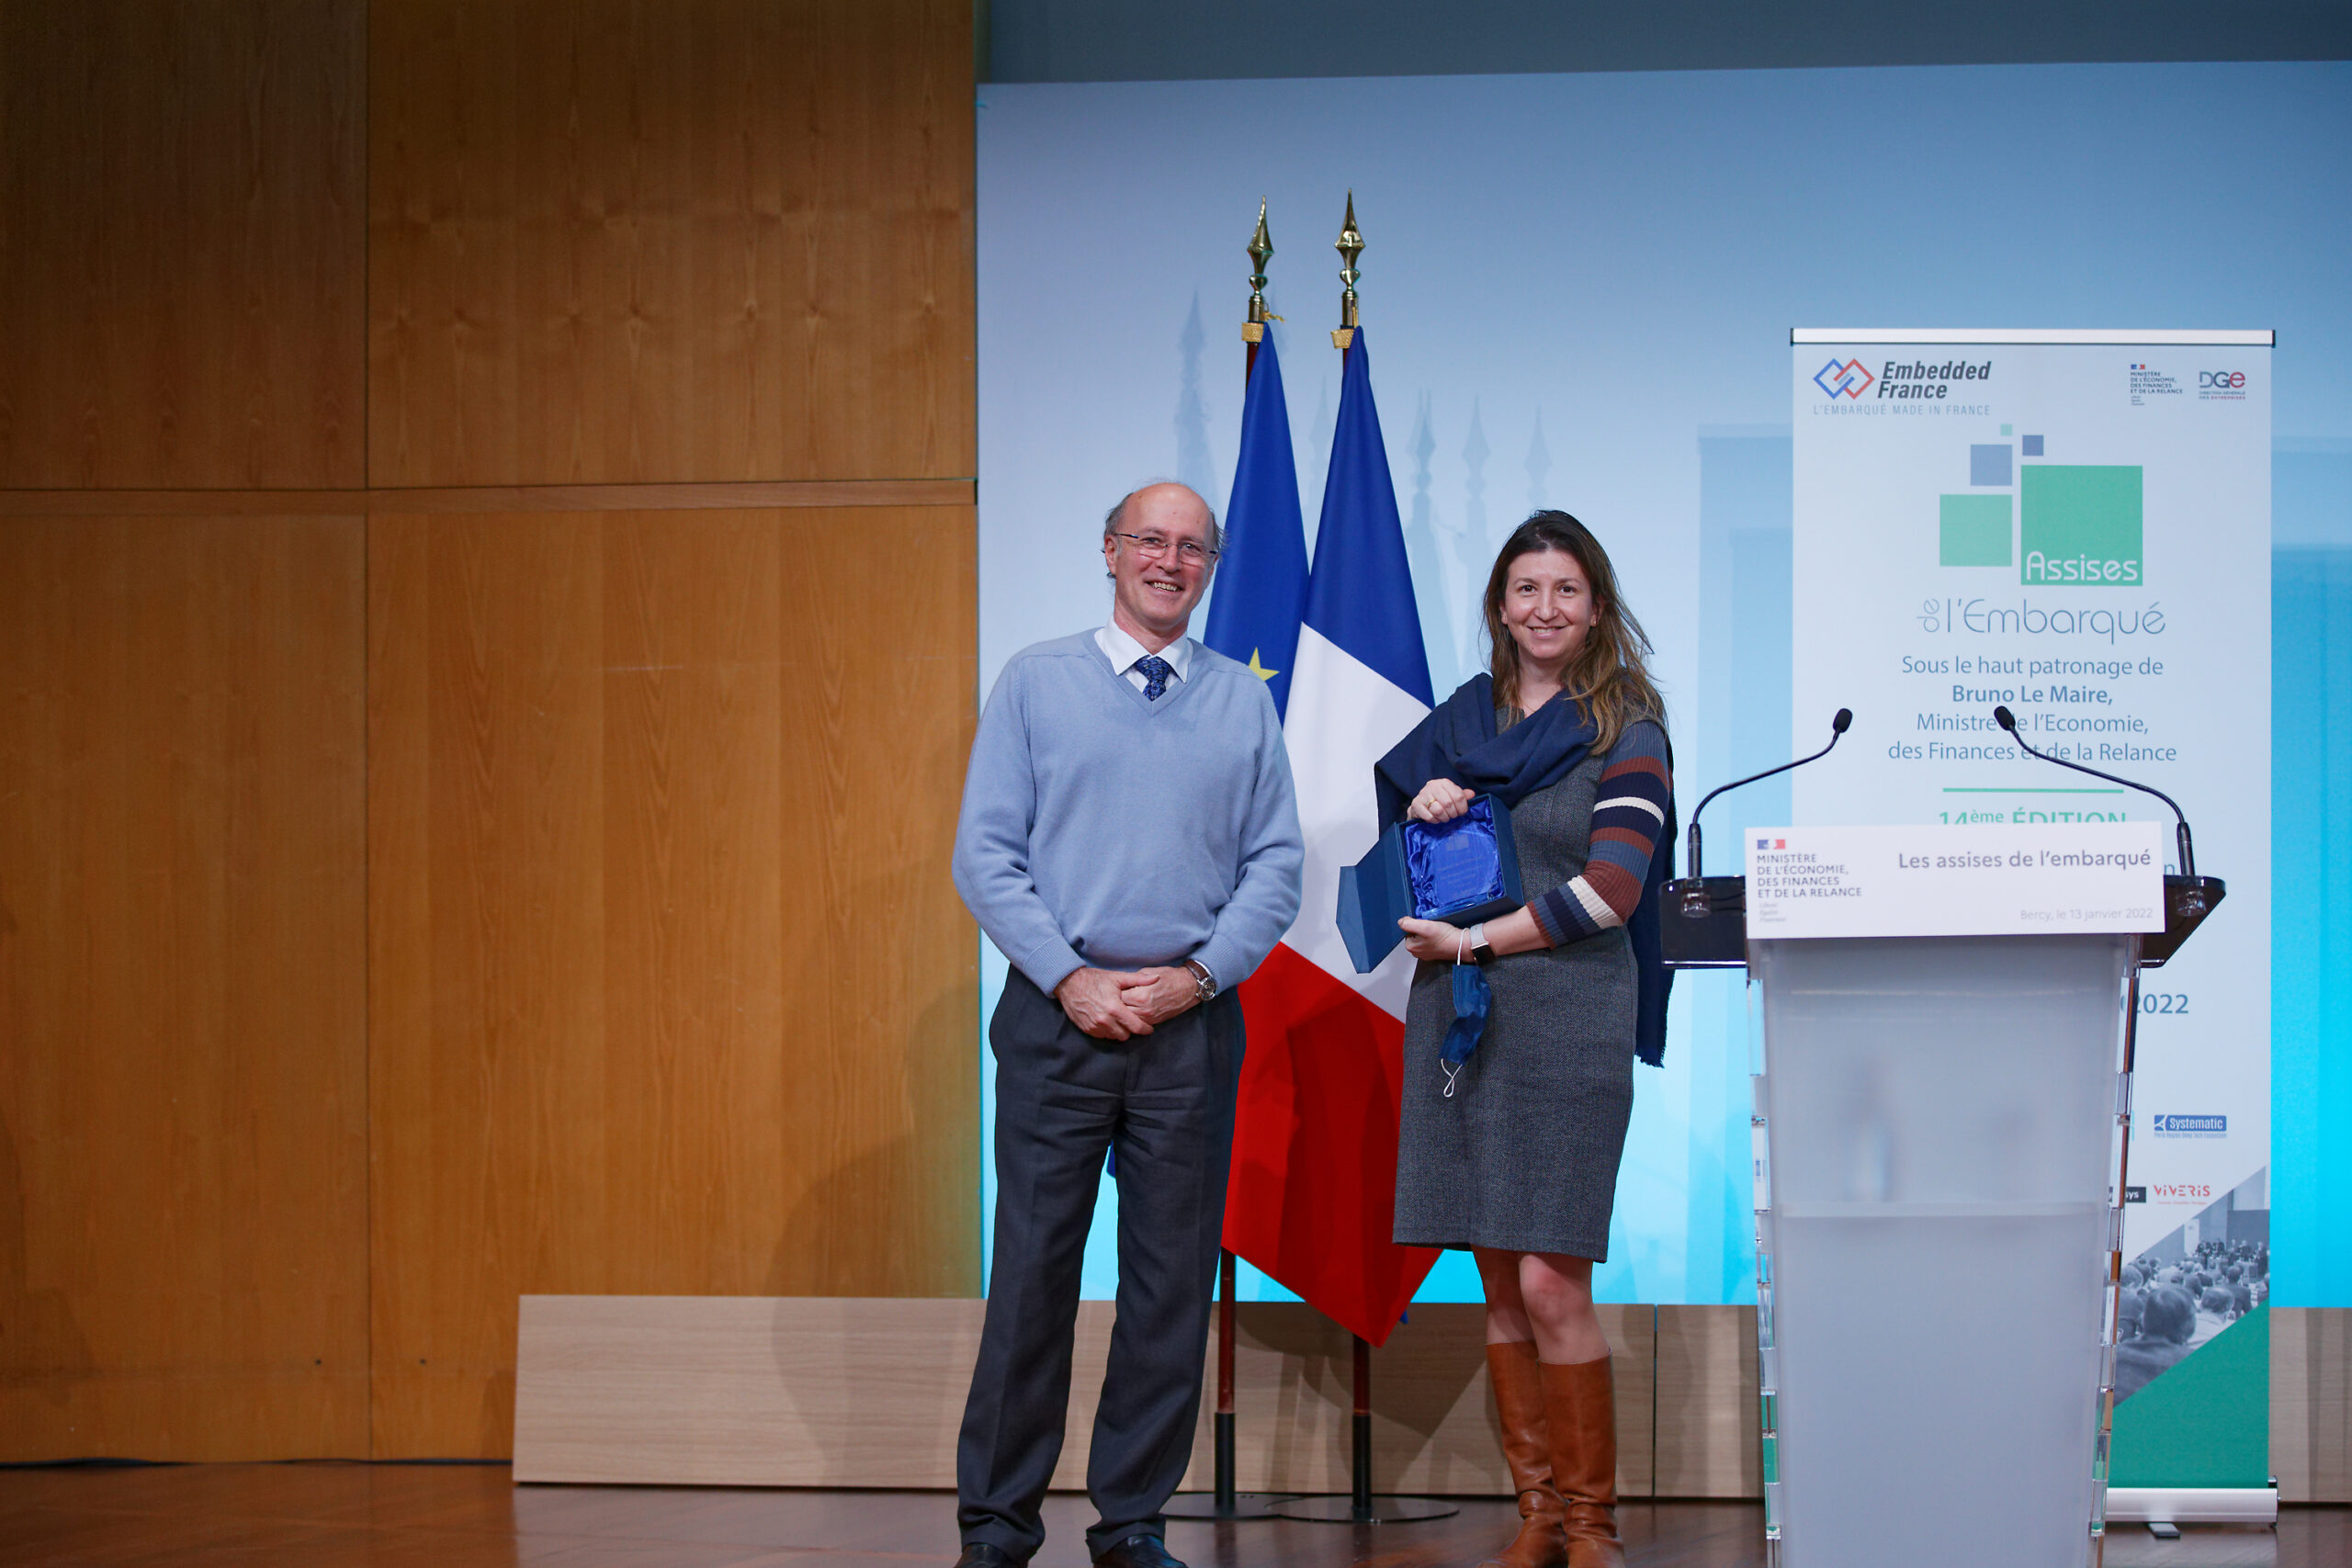 Monsieur Cedric DEMEURE décerne à Liliana Cucu-Grosjean, le Trophée des technologies de l’embarqué gagné par Statinf pour son outil, RocqStat